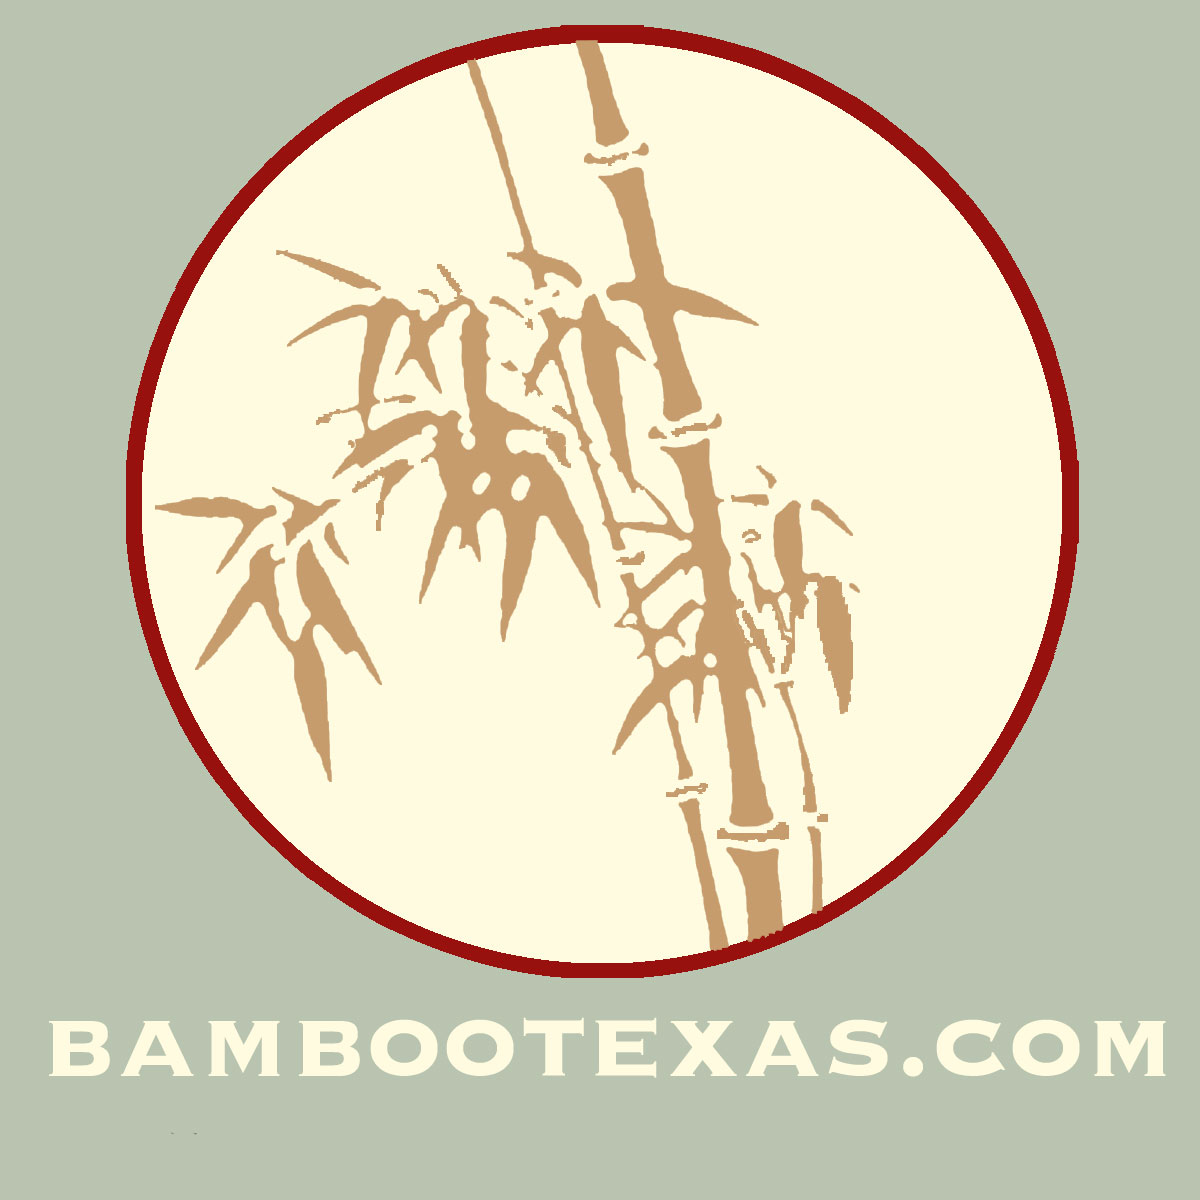 BAMBOOTEXAS.COM